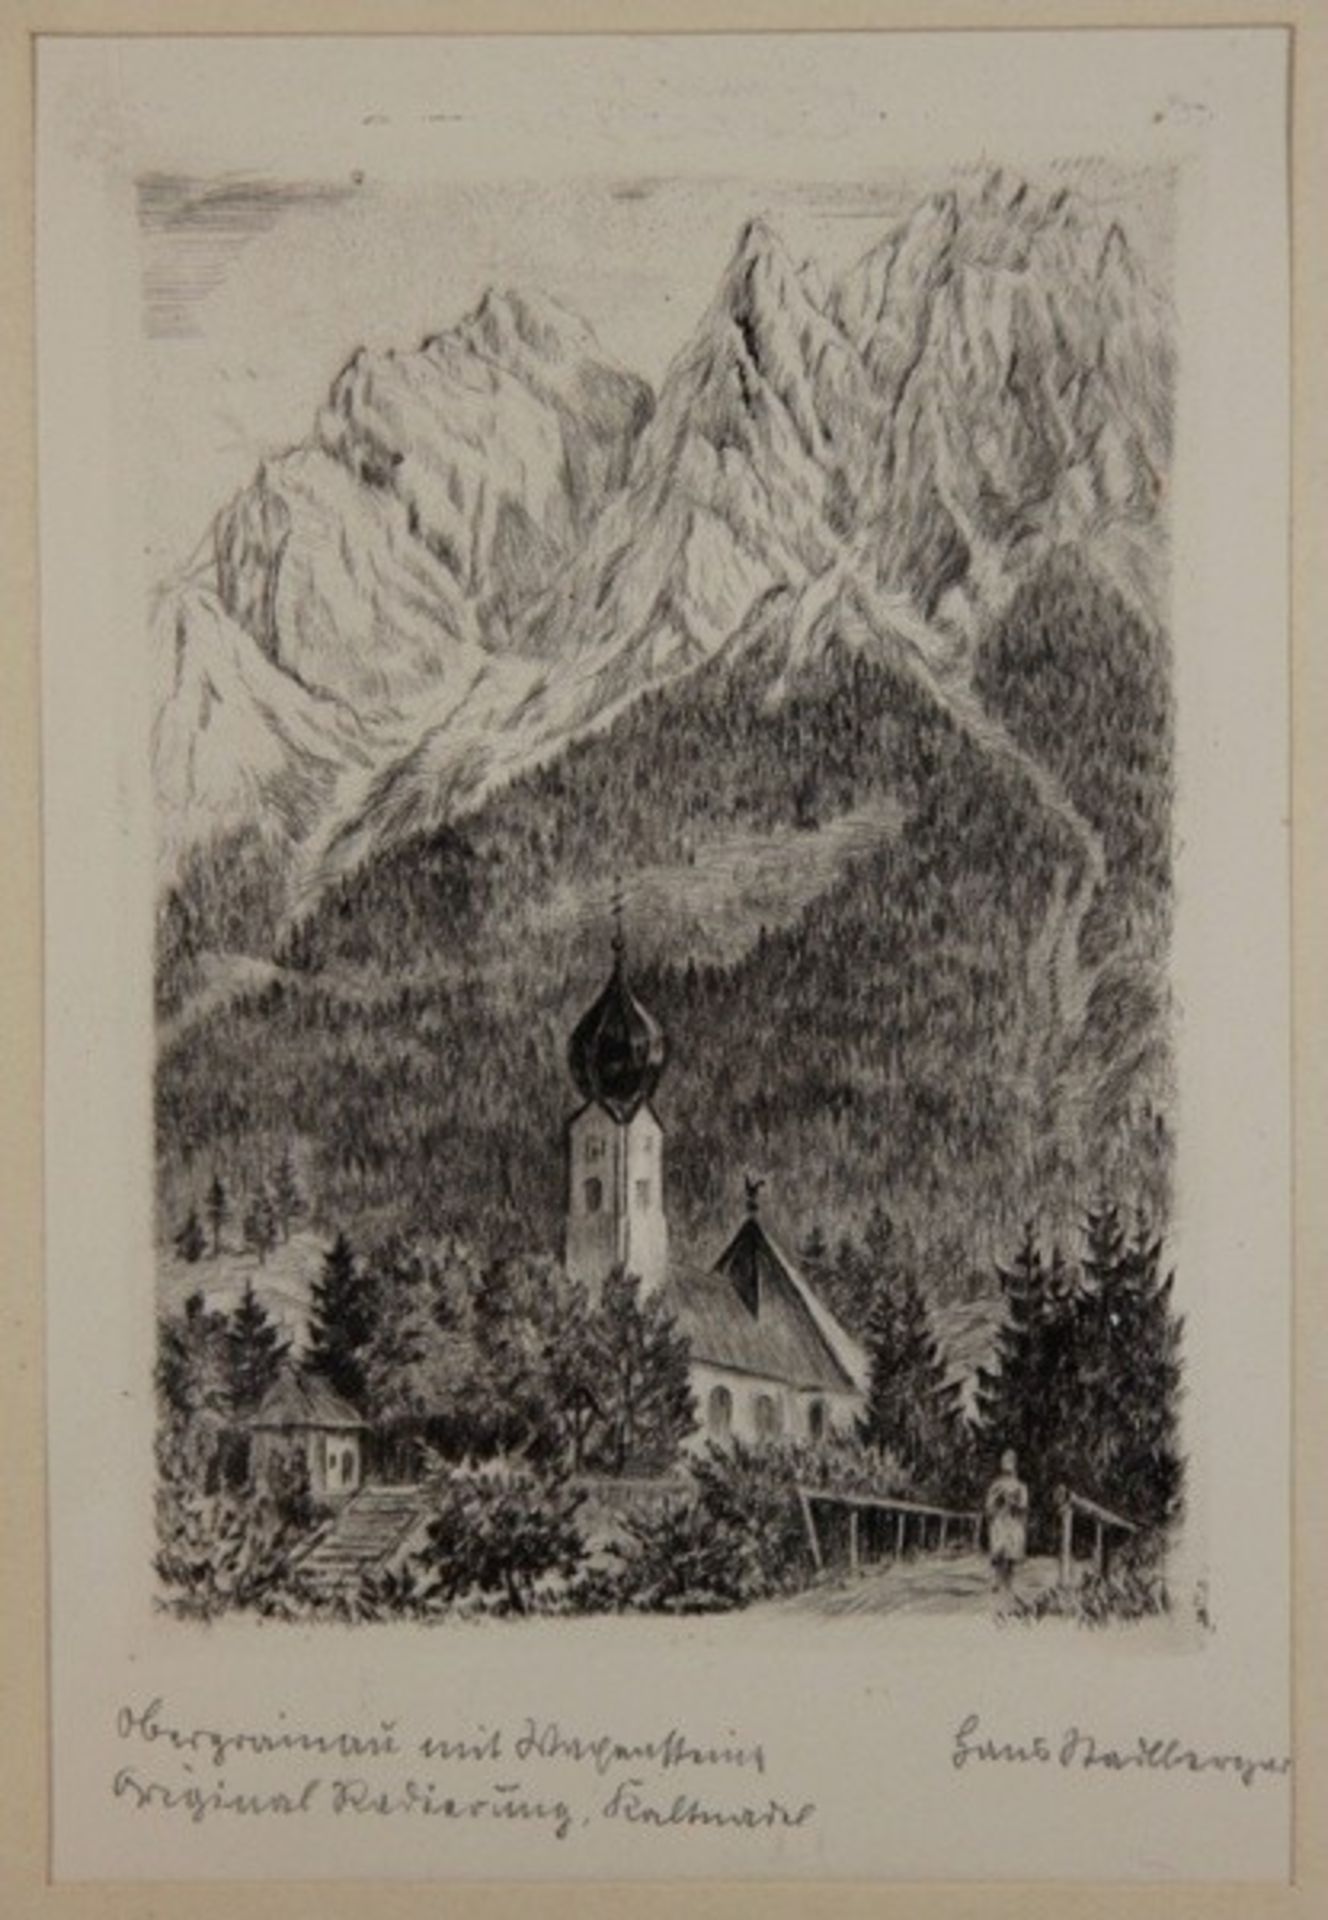 Stadlberger, Hans1892-1970, Original-Radierung Kaltnadel, Oberammergau, Kirche mit Zwiebelturm vor